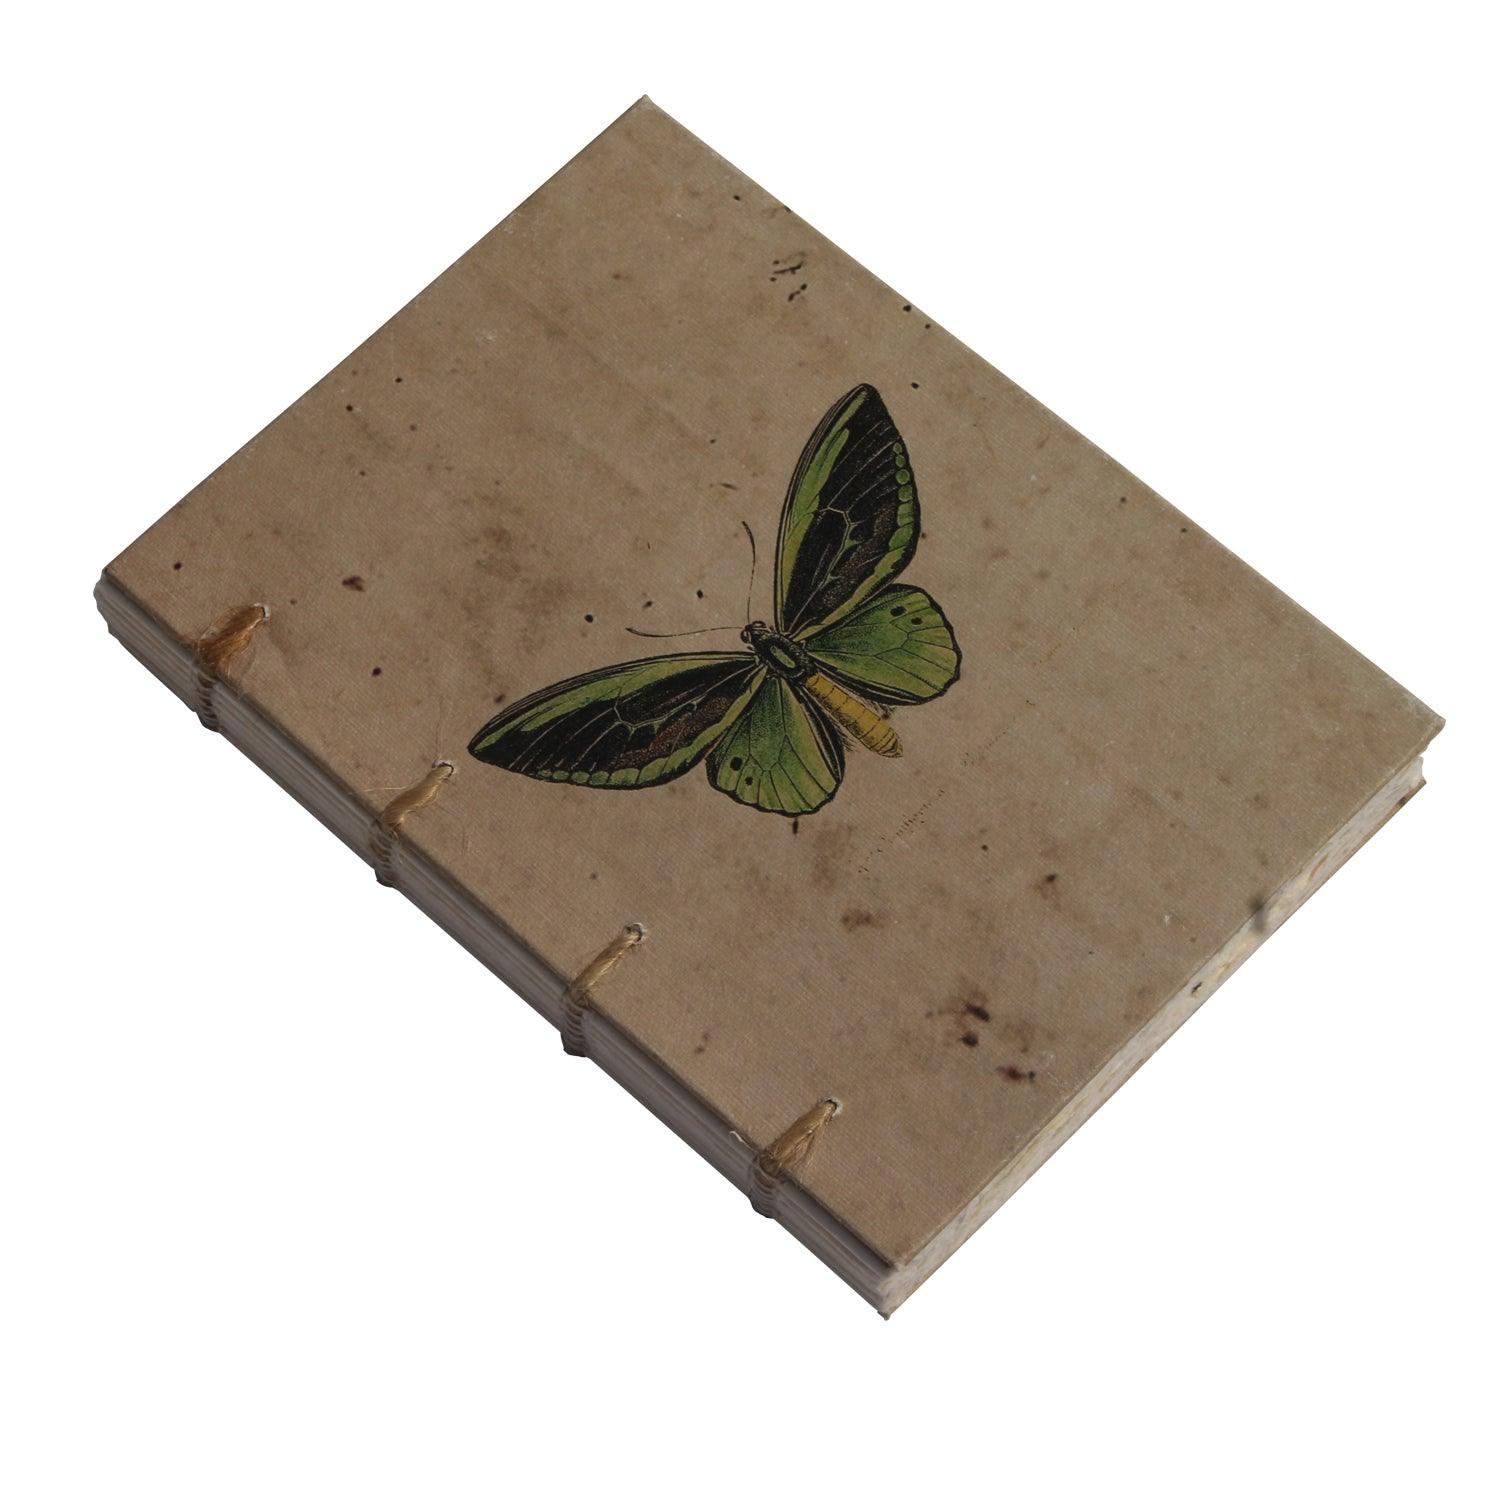 Vintage Butterfly Artwork Journal - DeKulture DKW-1143-J